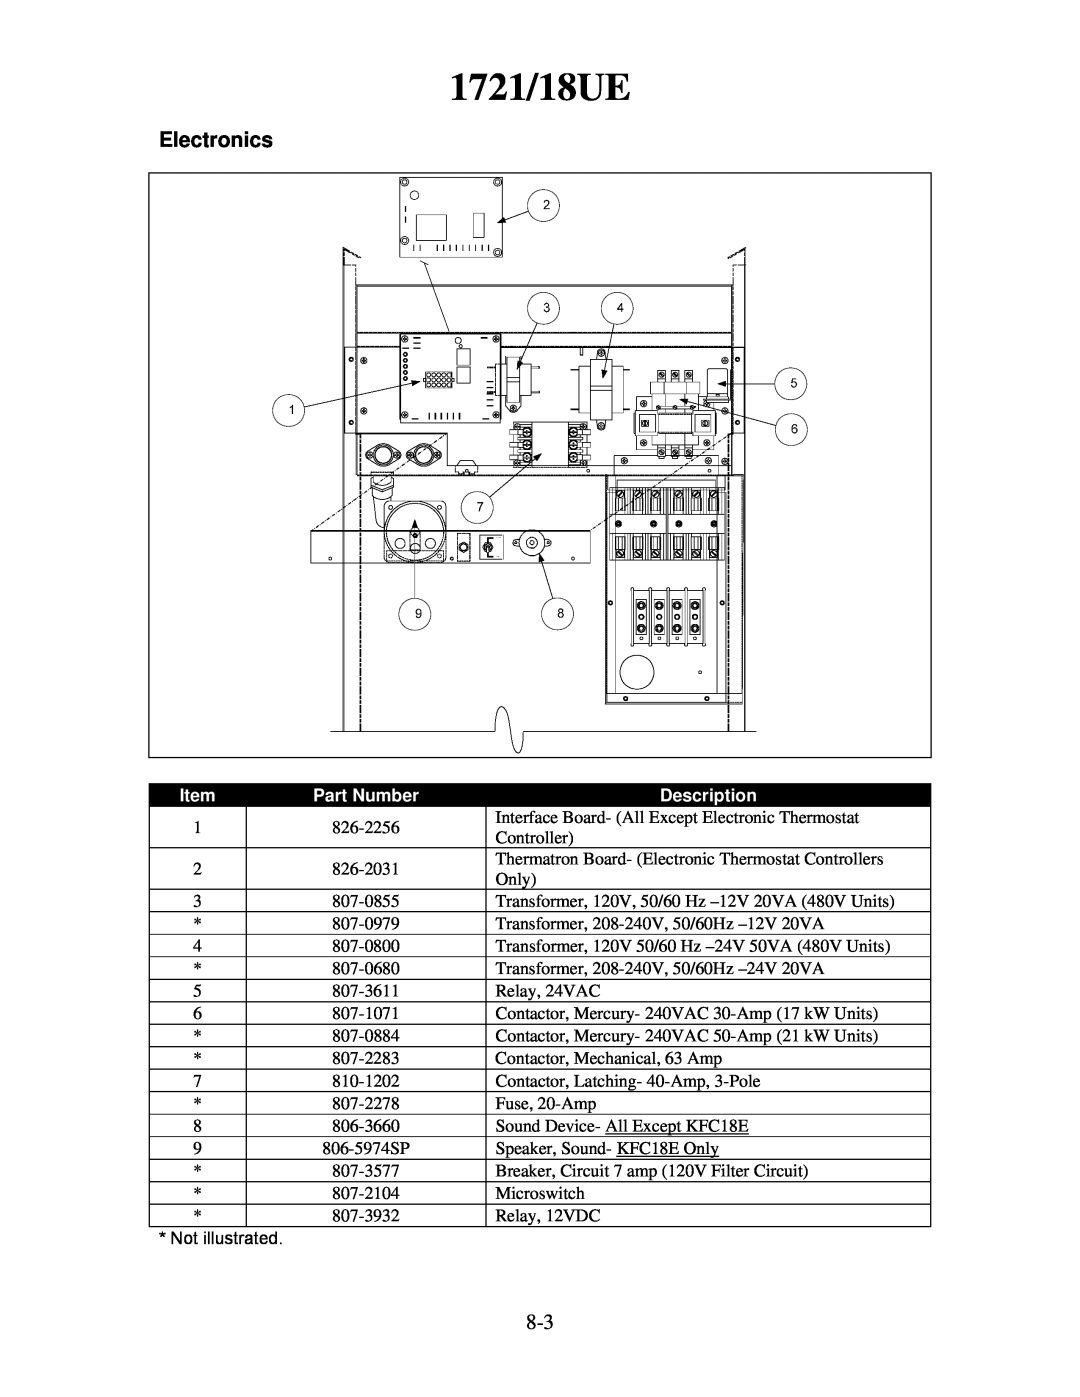 Frymaster H55 manual 1721/18UE, Electronics, Part Number, Description 